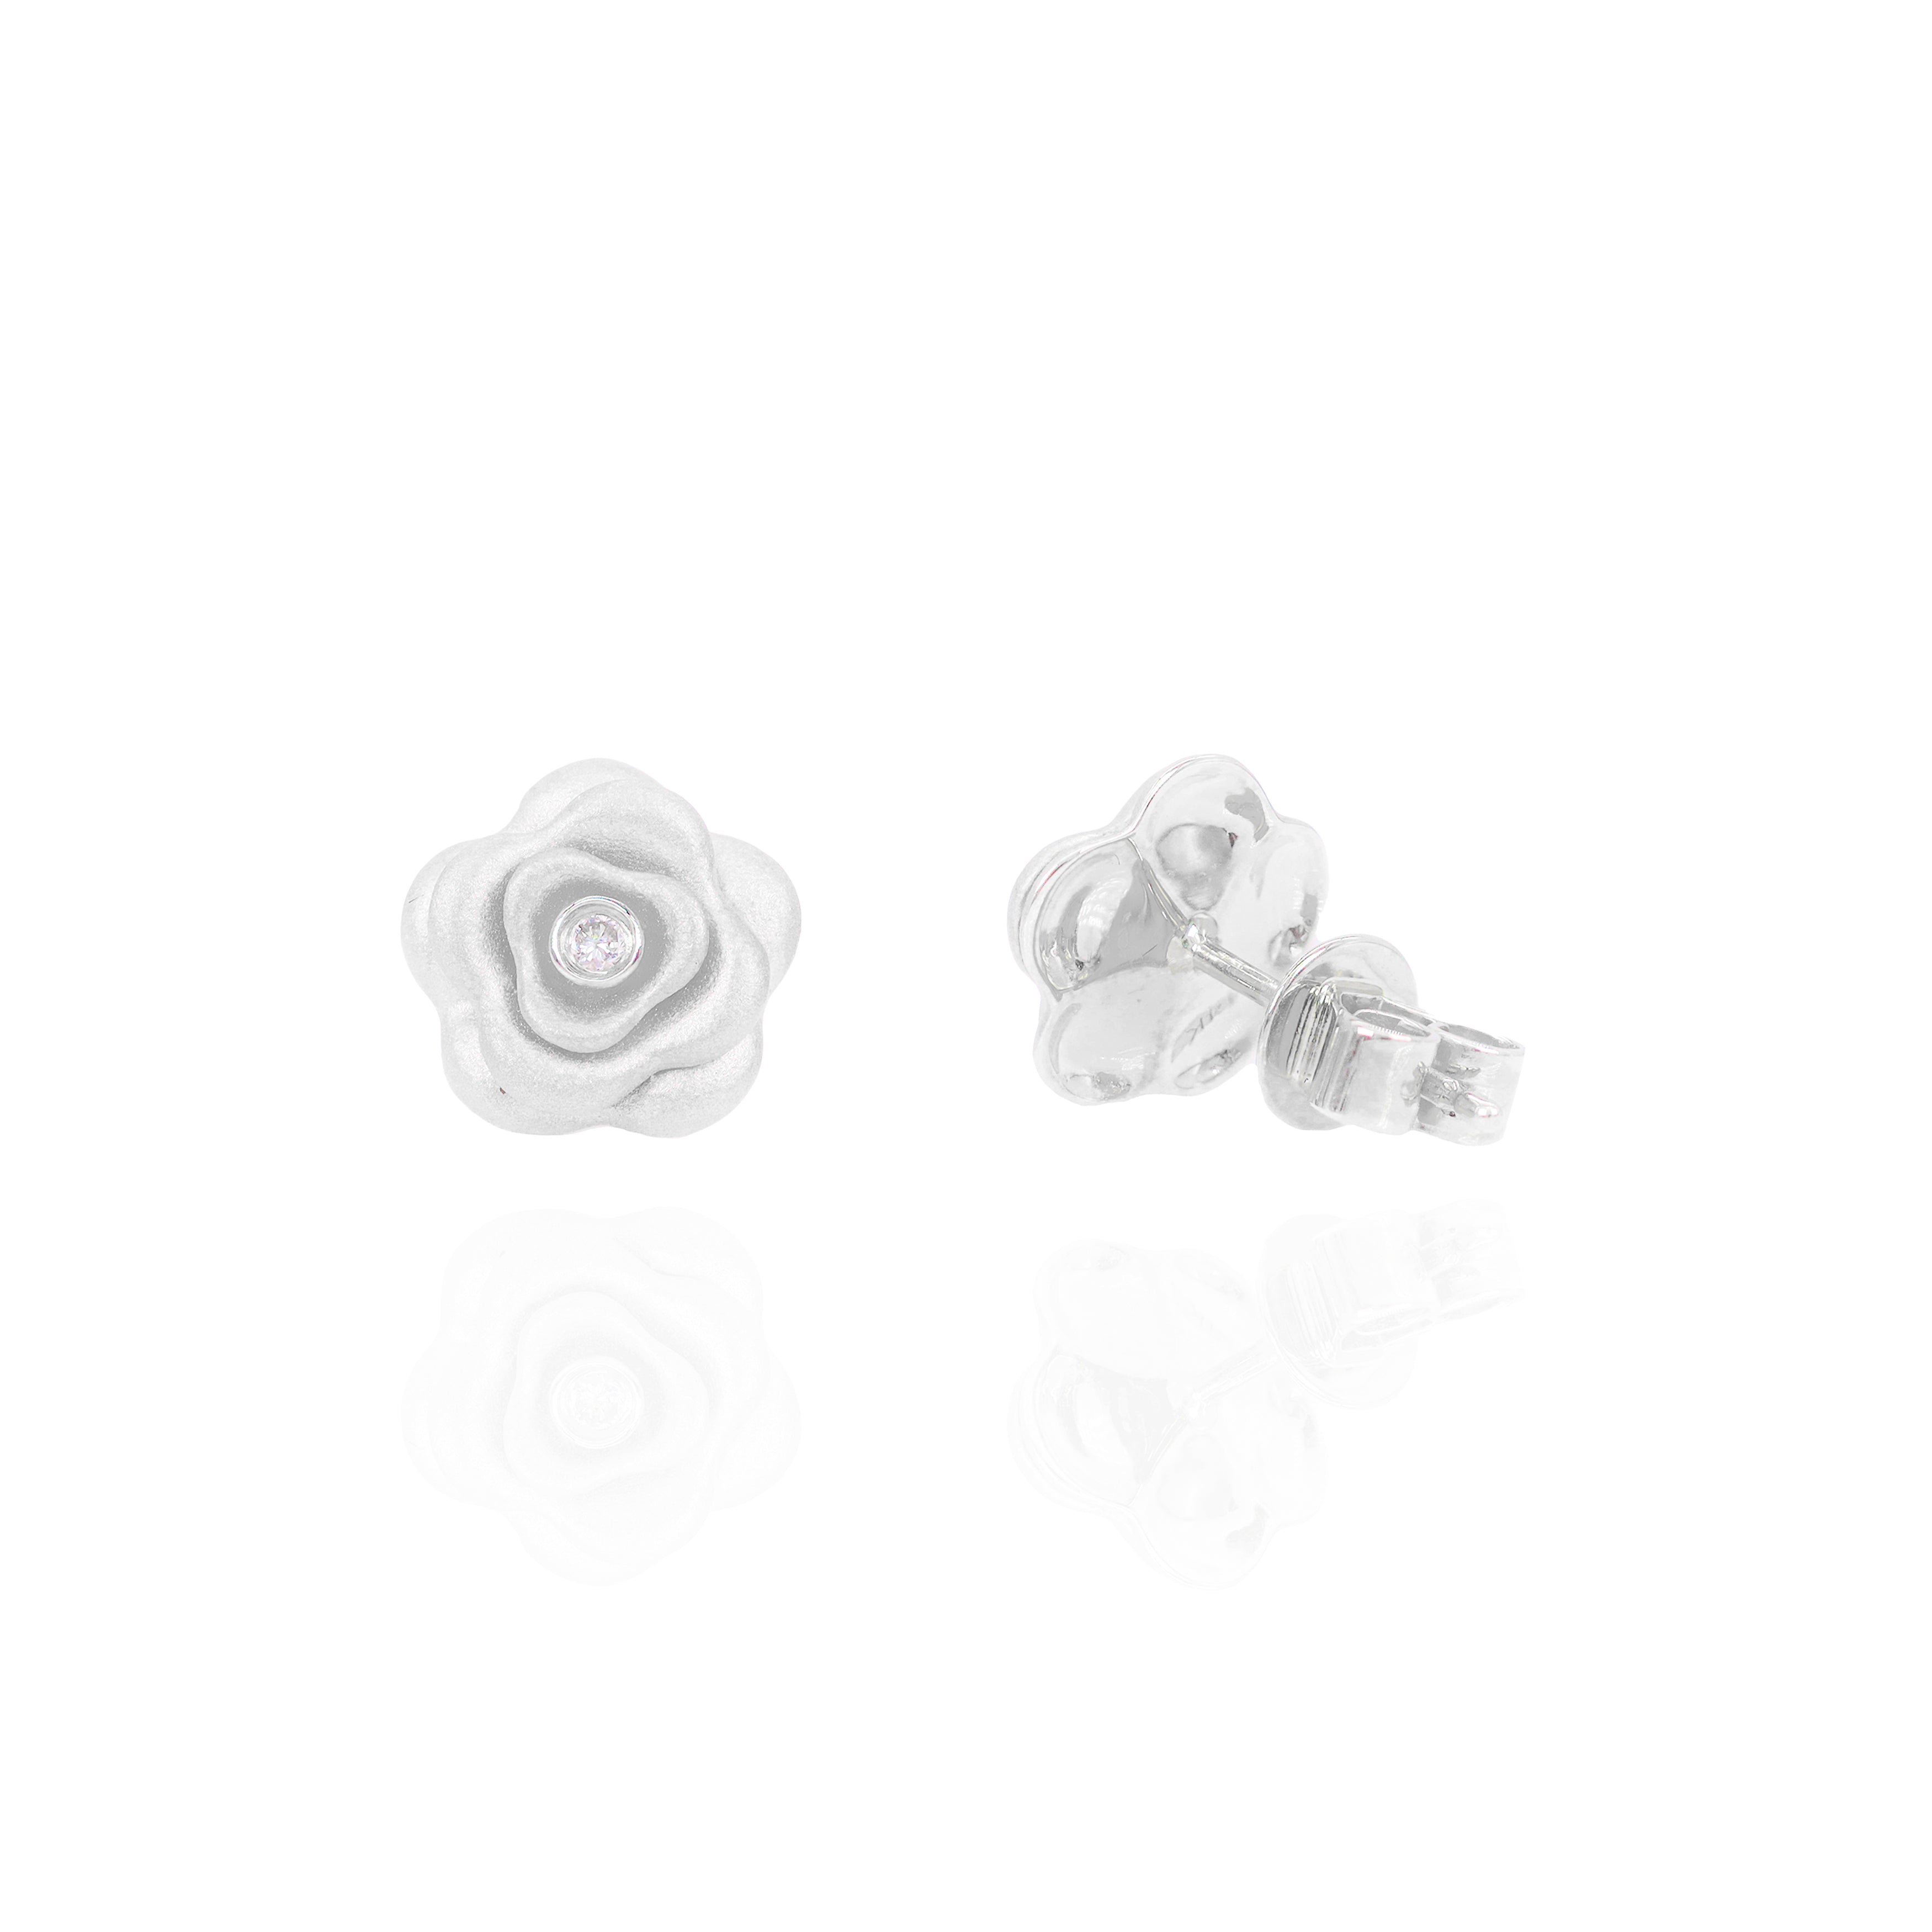 Satin Gold Rose Flower Diamond Earrings